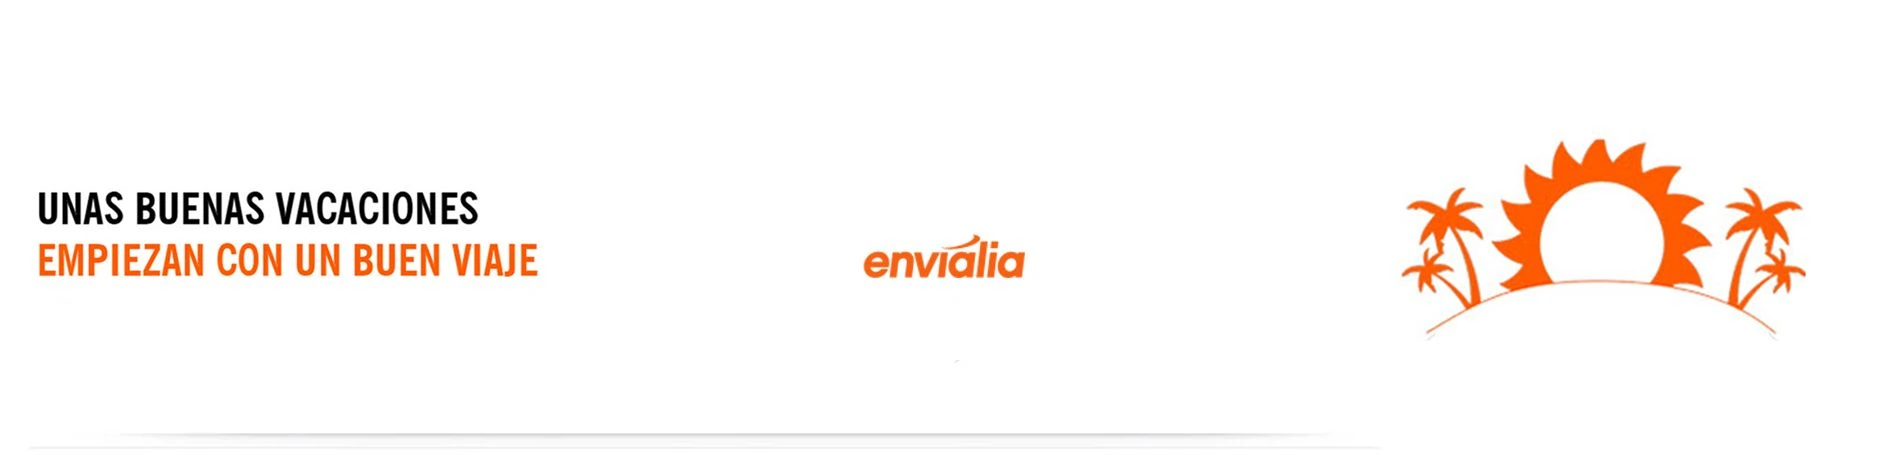 Envialia confía en Lifting Group como Consultora Estratégica